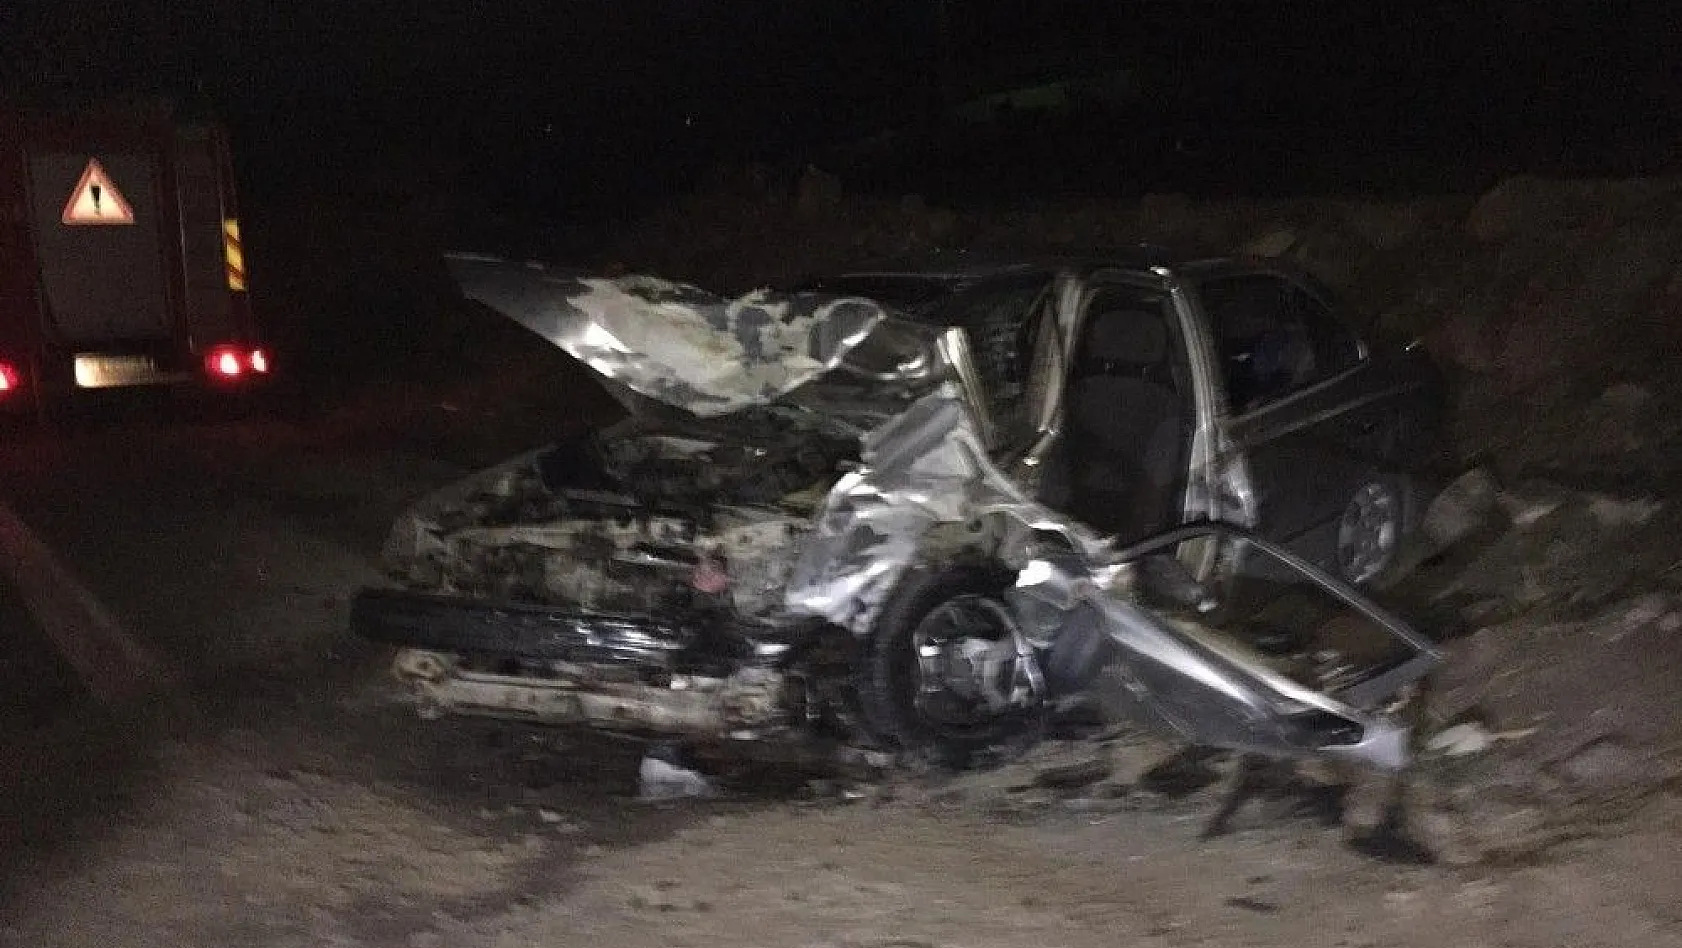 Yahyalı'da trafik kazası: 1 ölü 4 yaralı